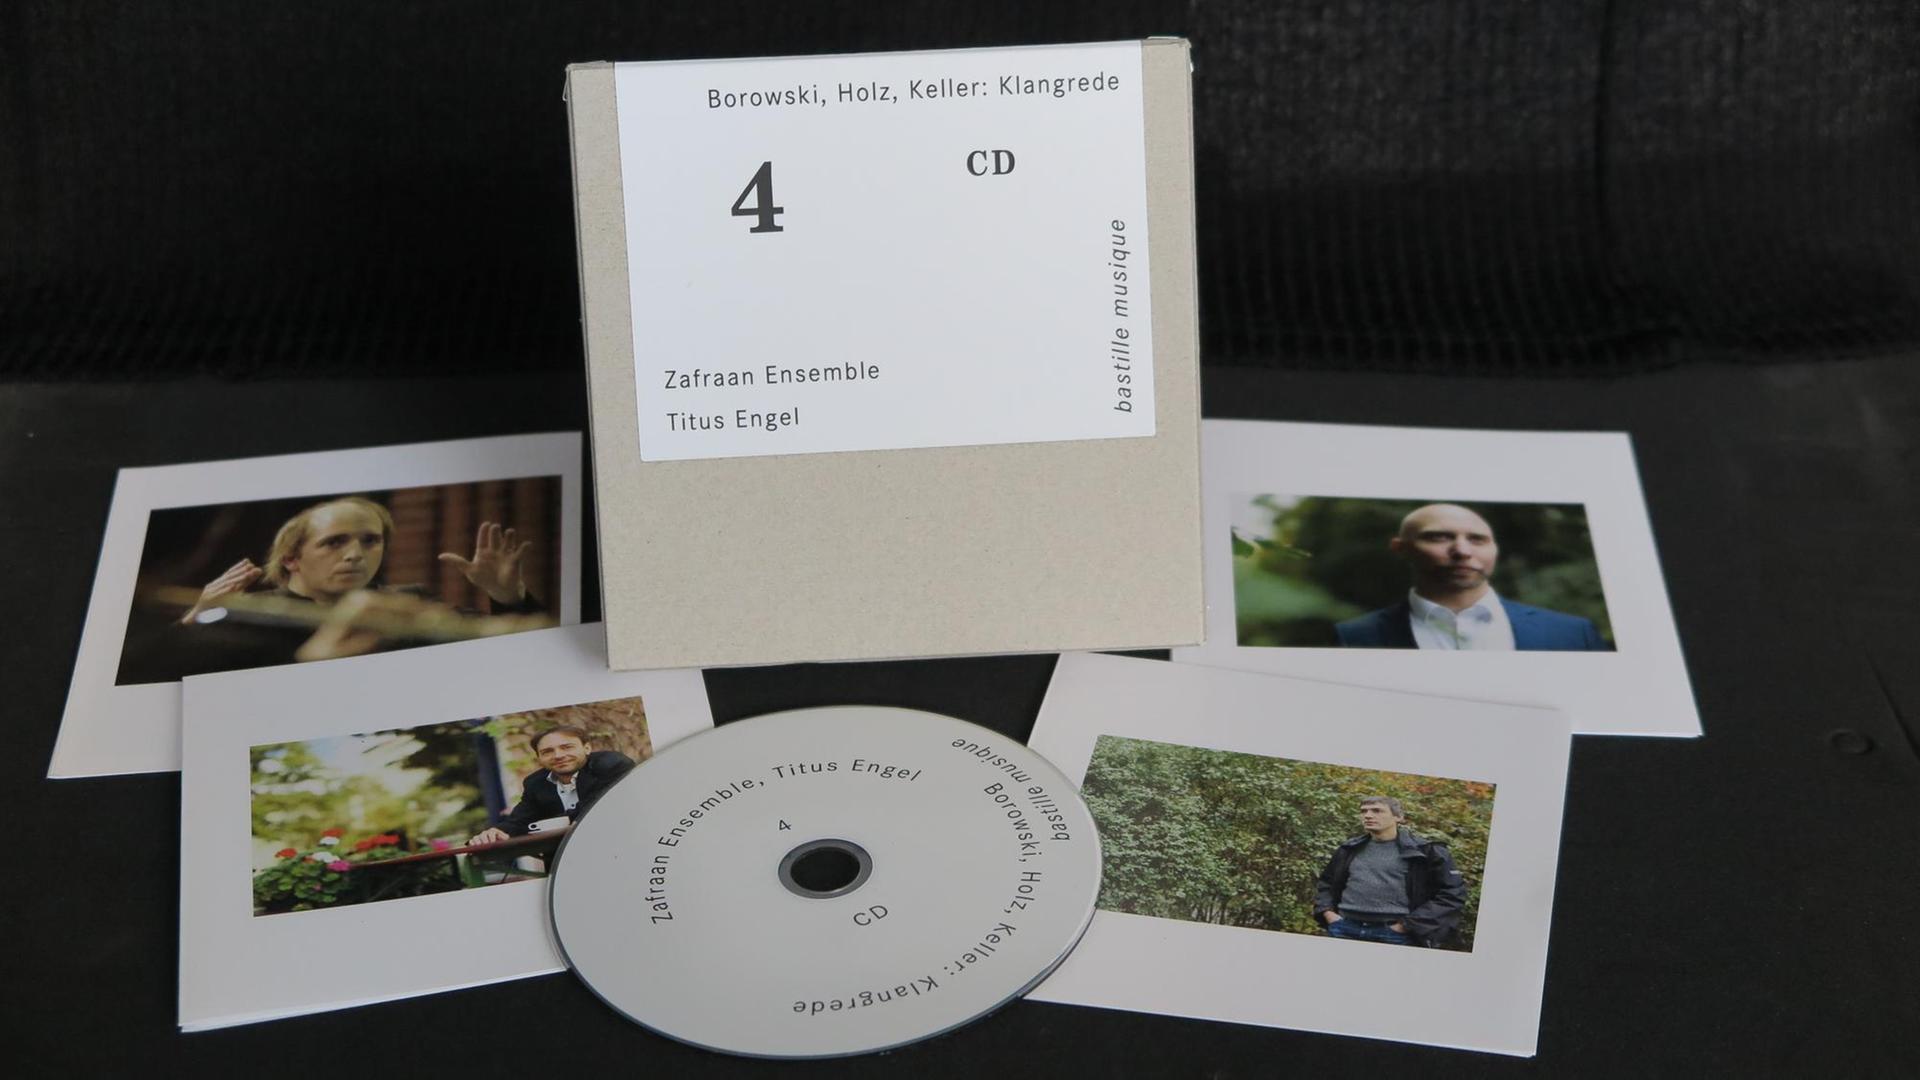 Eine CD liegt ausgepackt mit Cover und Booklets auf schwarzem Hintergrund